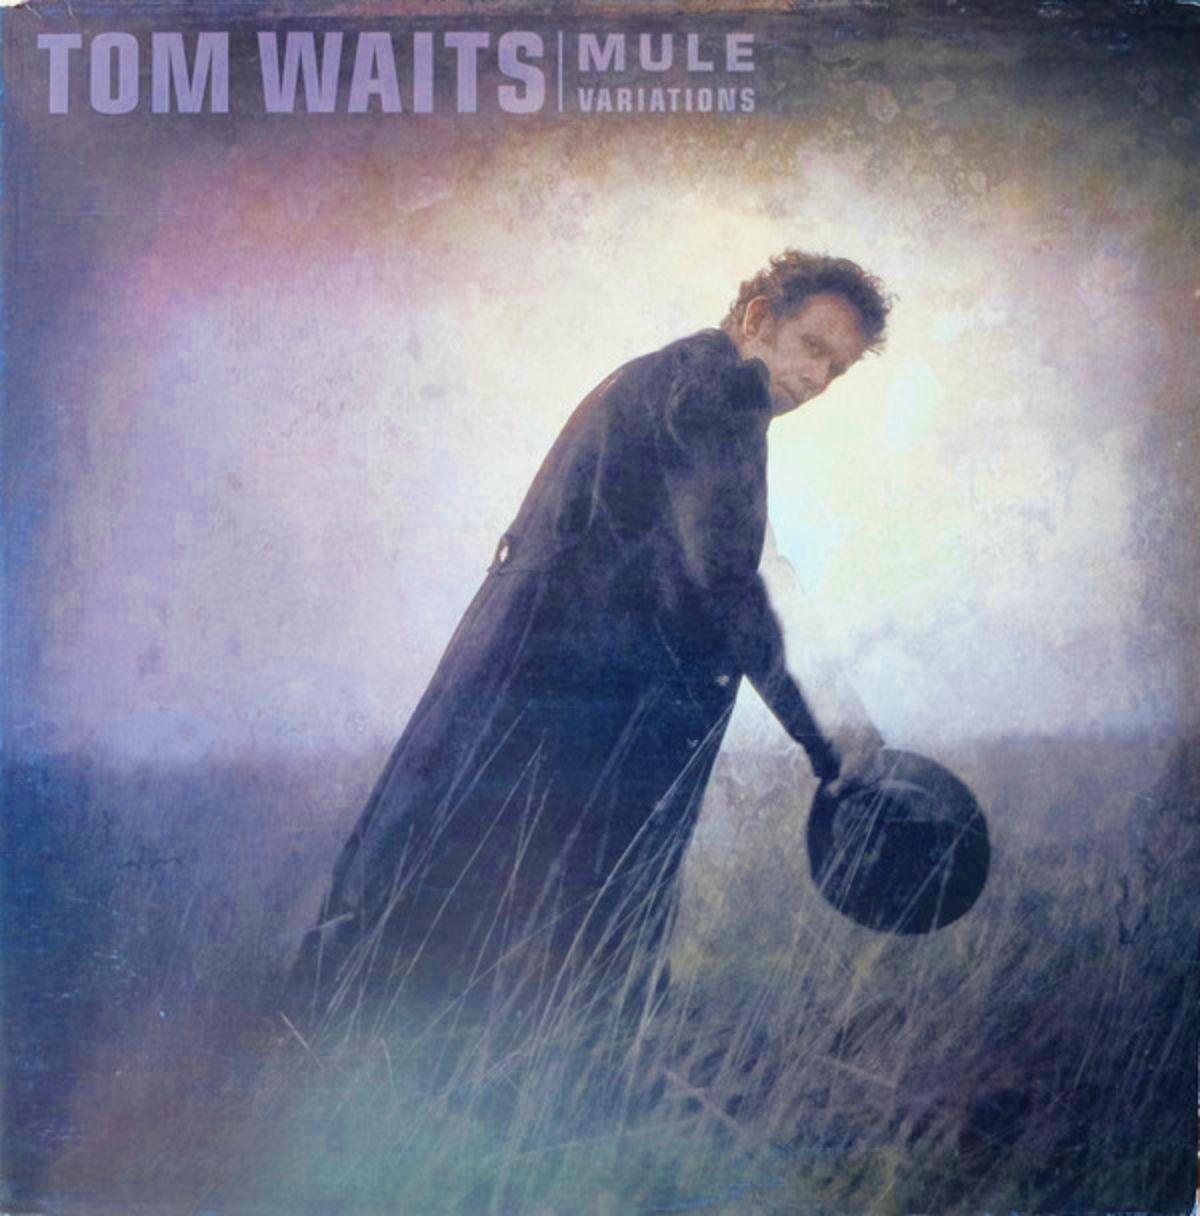 Das Cover von Tom Waits' Album "Mule Variations"...